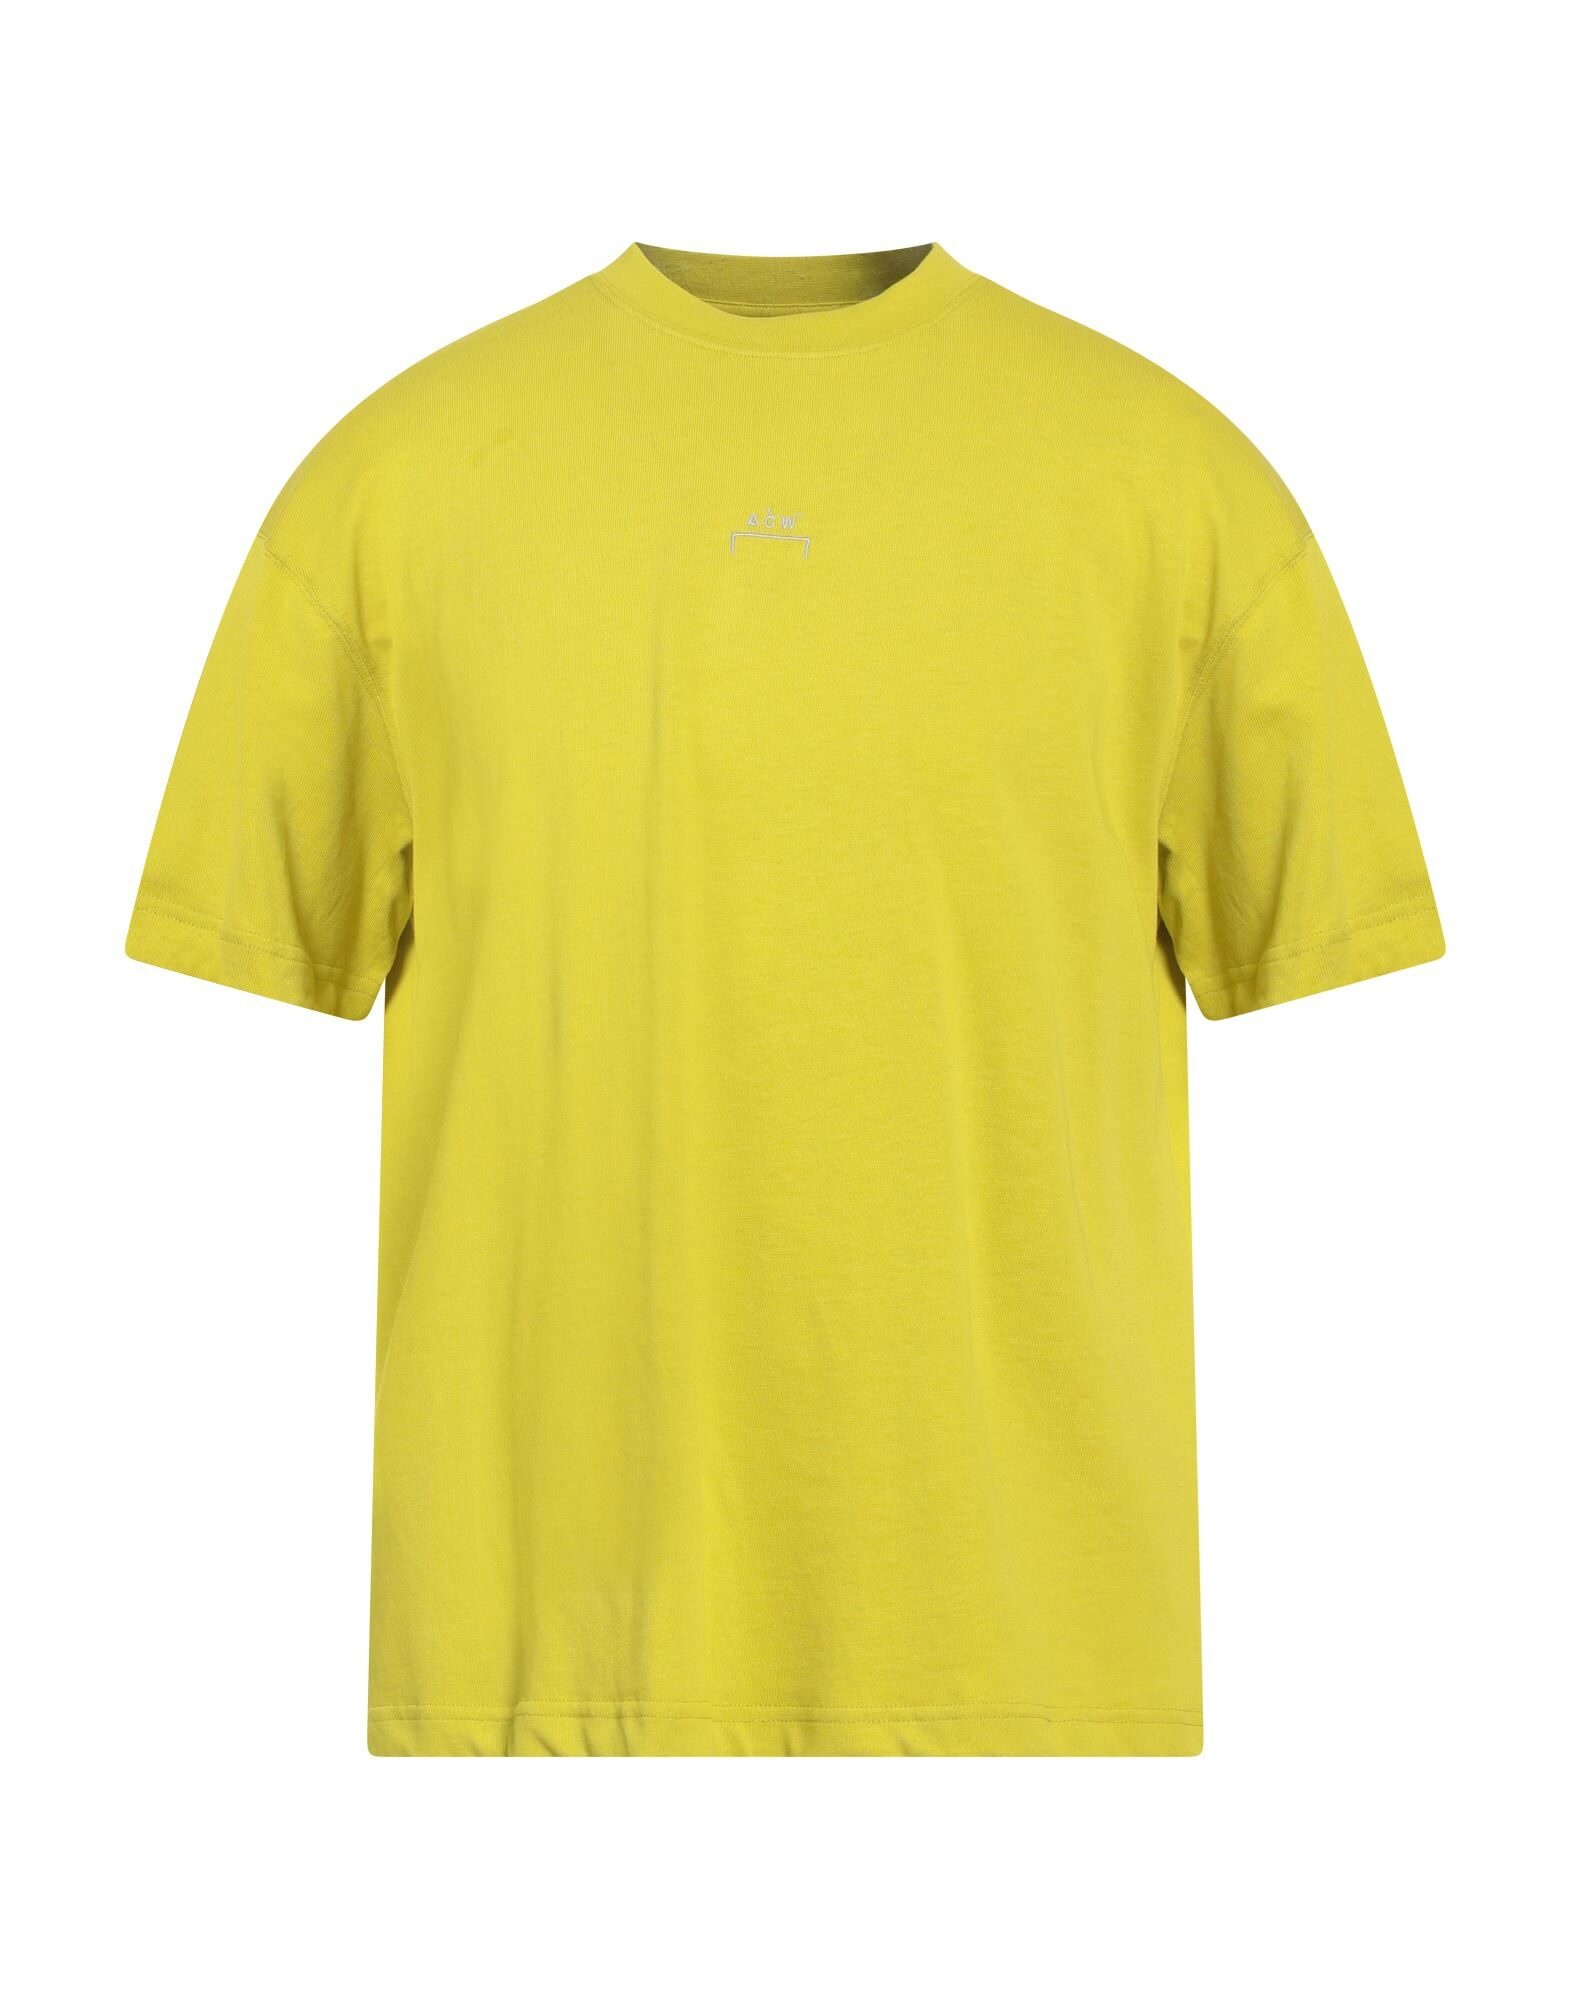 Acid green Men's Basic T-shirt - 1